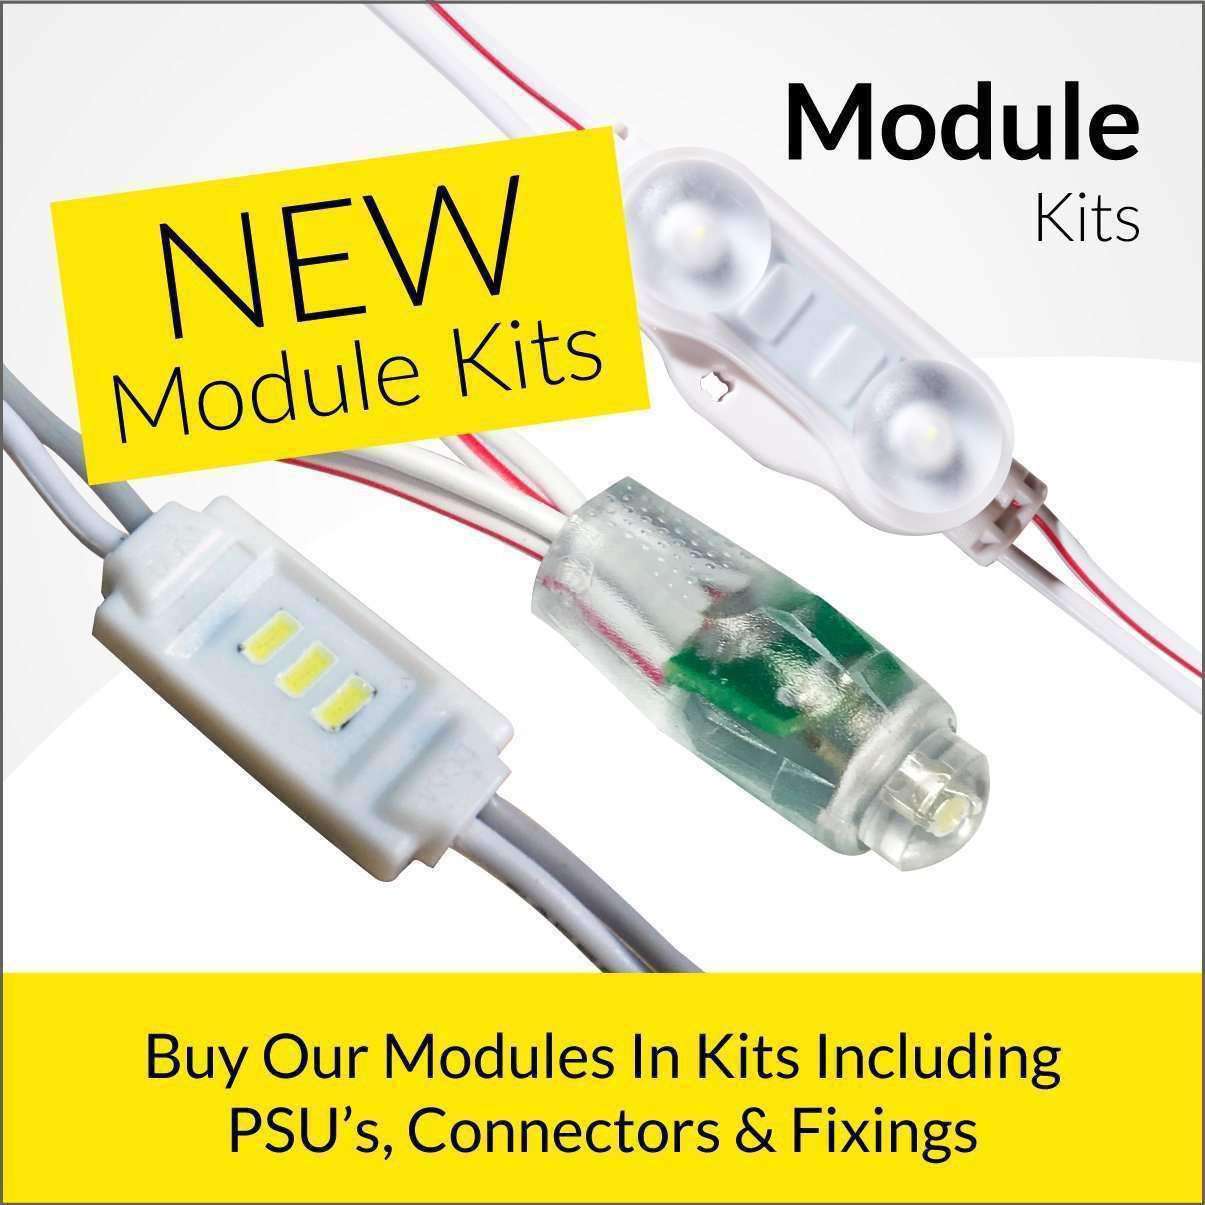 Module Kits